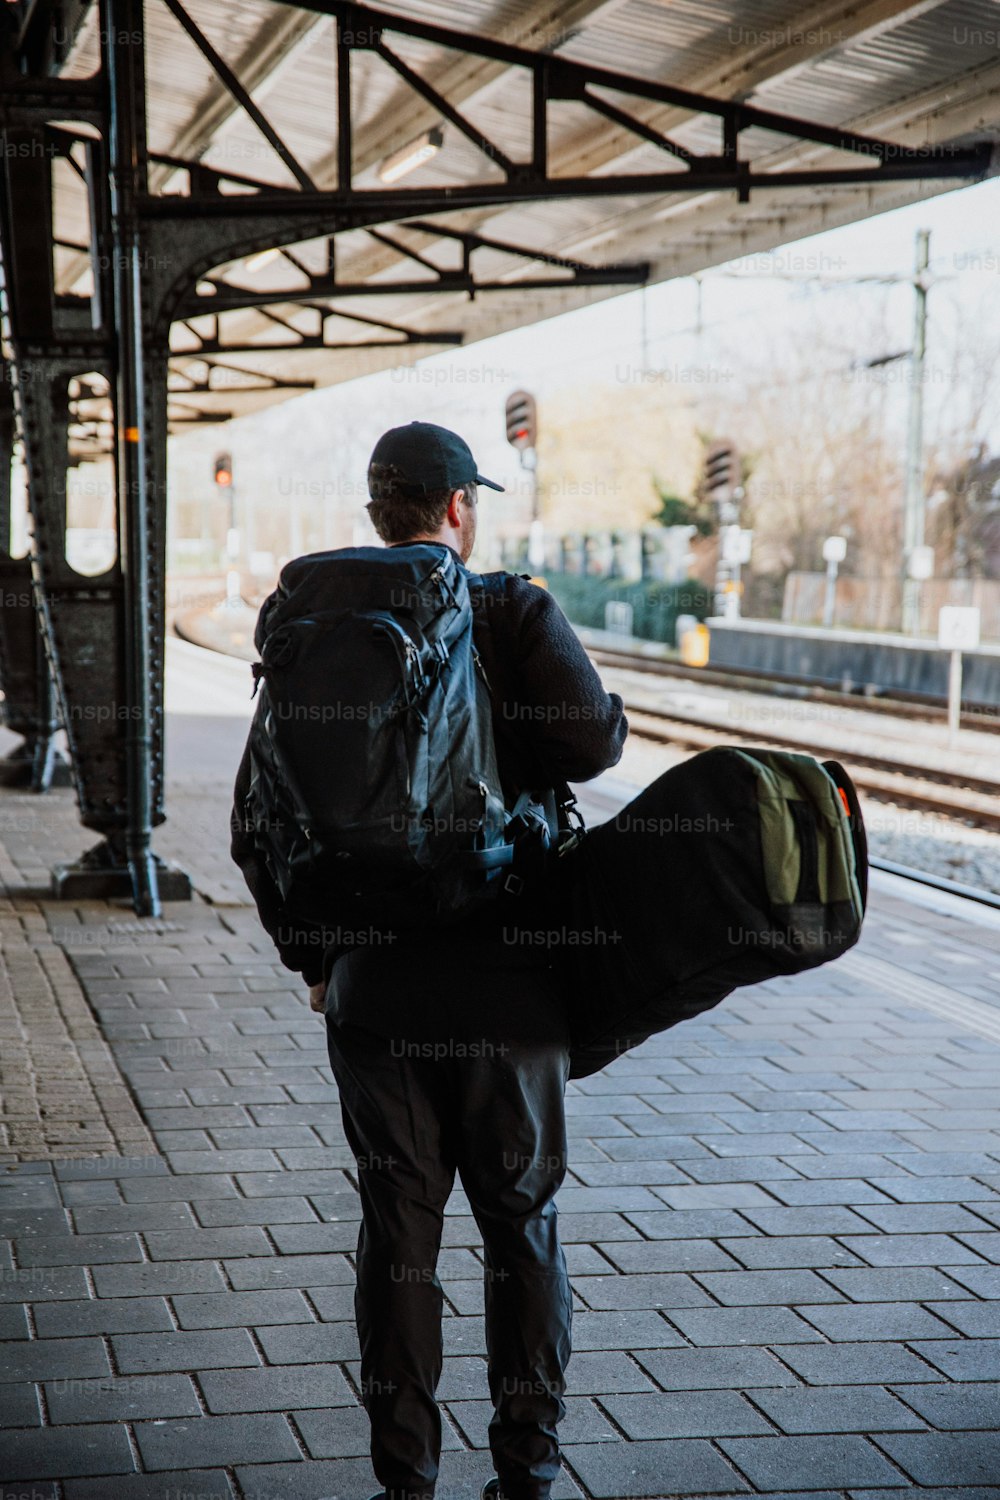 Ein Mann mit einem Rucksack, der einen Bahnsteig hinuntergeht